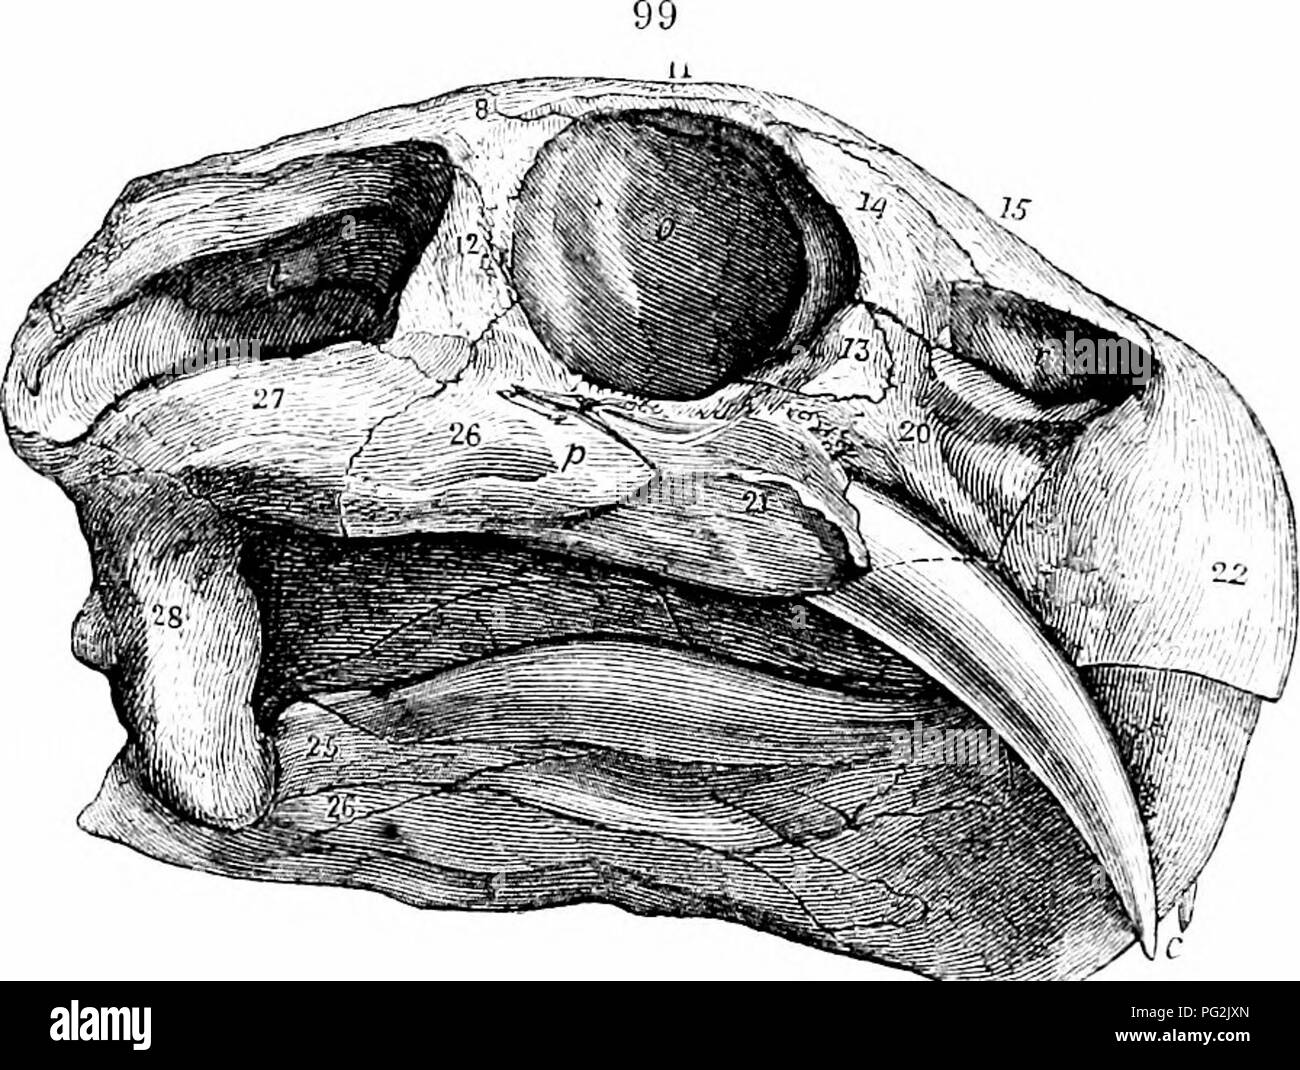 . Auf der Anatomie der Wirbeltiere. Wirbeltiere; Anatomie, Vergleichende; 1866. IGO ANATOMIE DER WIRBELTIERE. Zwischen dem nasals, ist. Der Präfrontalen, 14, erstreckt sich auf das Nasenloch, n. Tlie lacrymal, 13, bildet den Rest der vordere Teil der Orbit, ex-forward tendenziell auf das Gesicht. Die Seiten des premaxillary, 22, abrupt nach unten vor die Nase beugen, um die MAXILLARIS, 20, 21; dies bildet die untere Begrenzung der Nasenloch, n, und verbindet sich über und hinter der mit dem Präfrontalen, lacrymal und nasalen Knochen: Der oberkiefer Projekte unter dem orljit, wie eine Fortsetzung der zygoma, werden Stockfoto